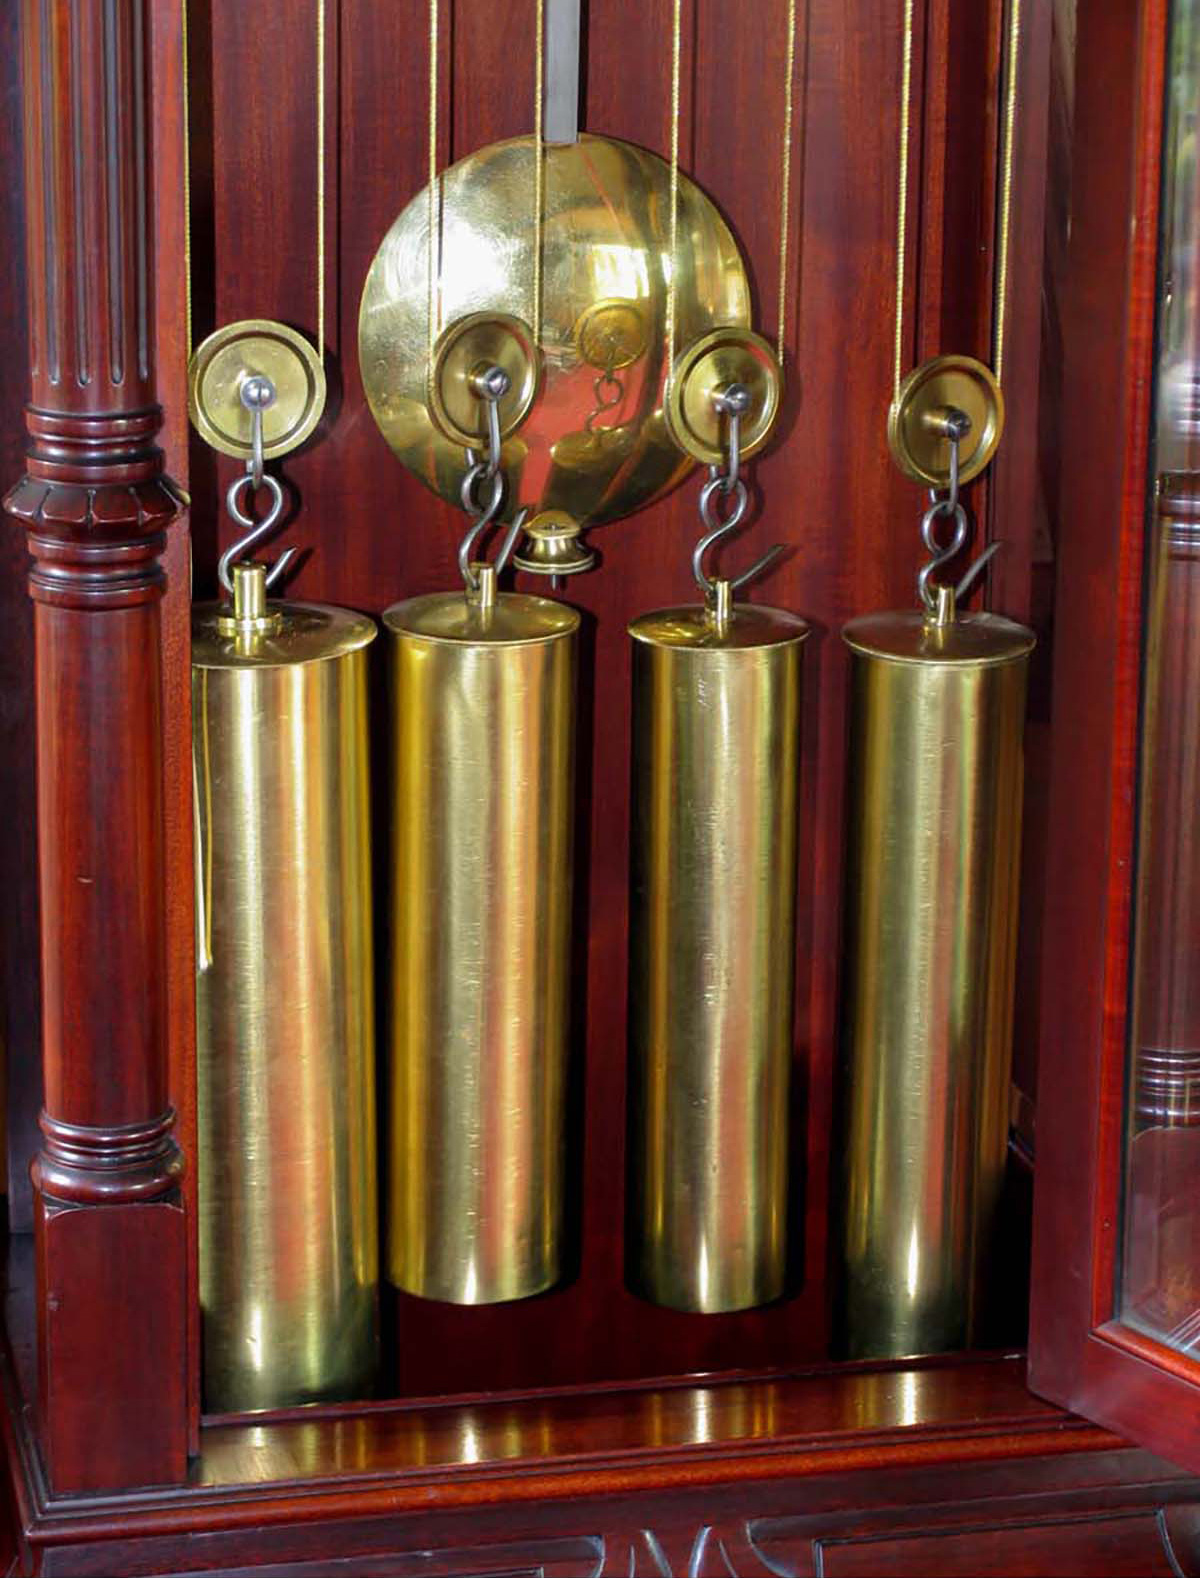 J. E. Caldwell 15 Bell, 18 Hammer, 5 Gong, Musical Grandfather Clock